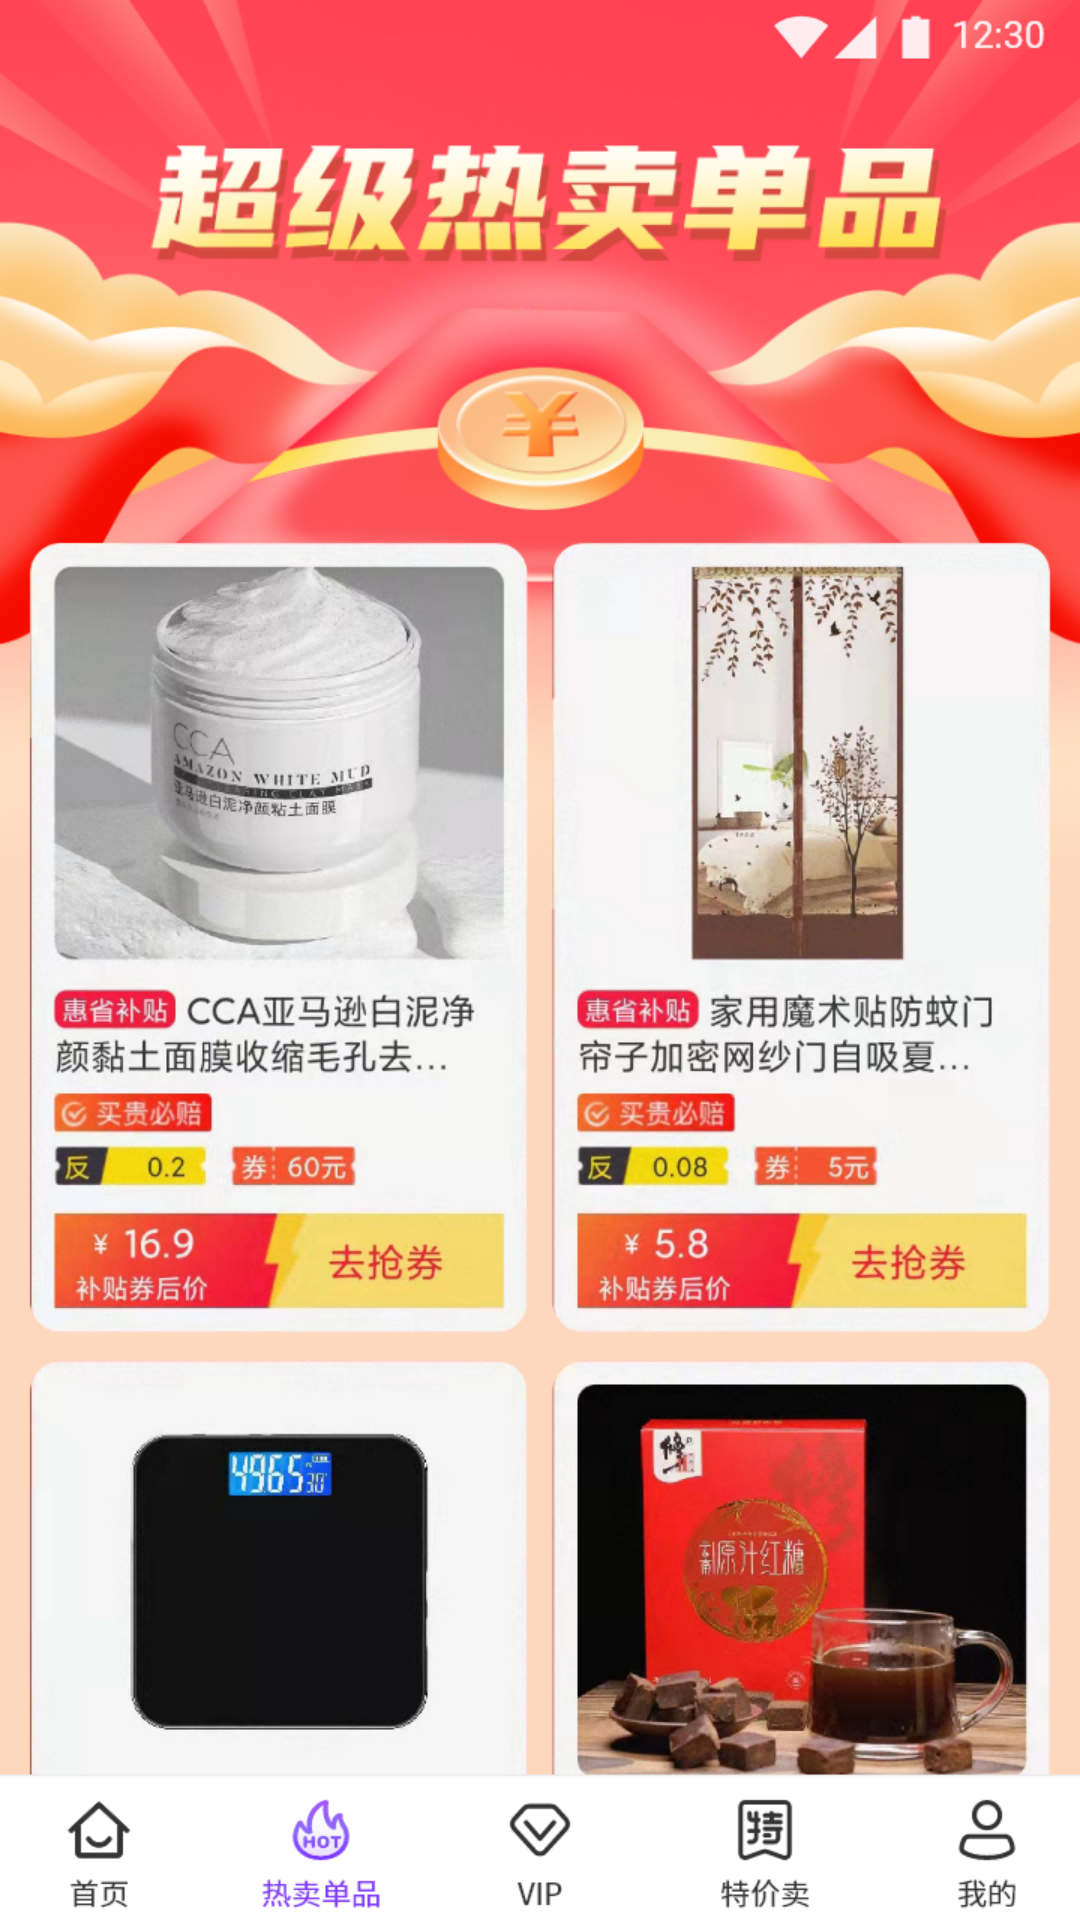 小象日记app